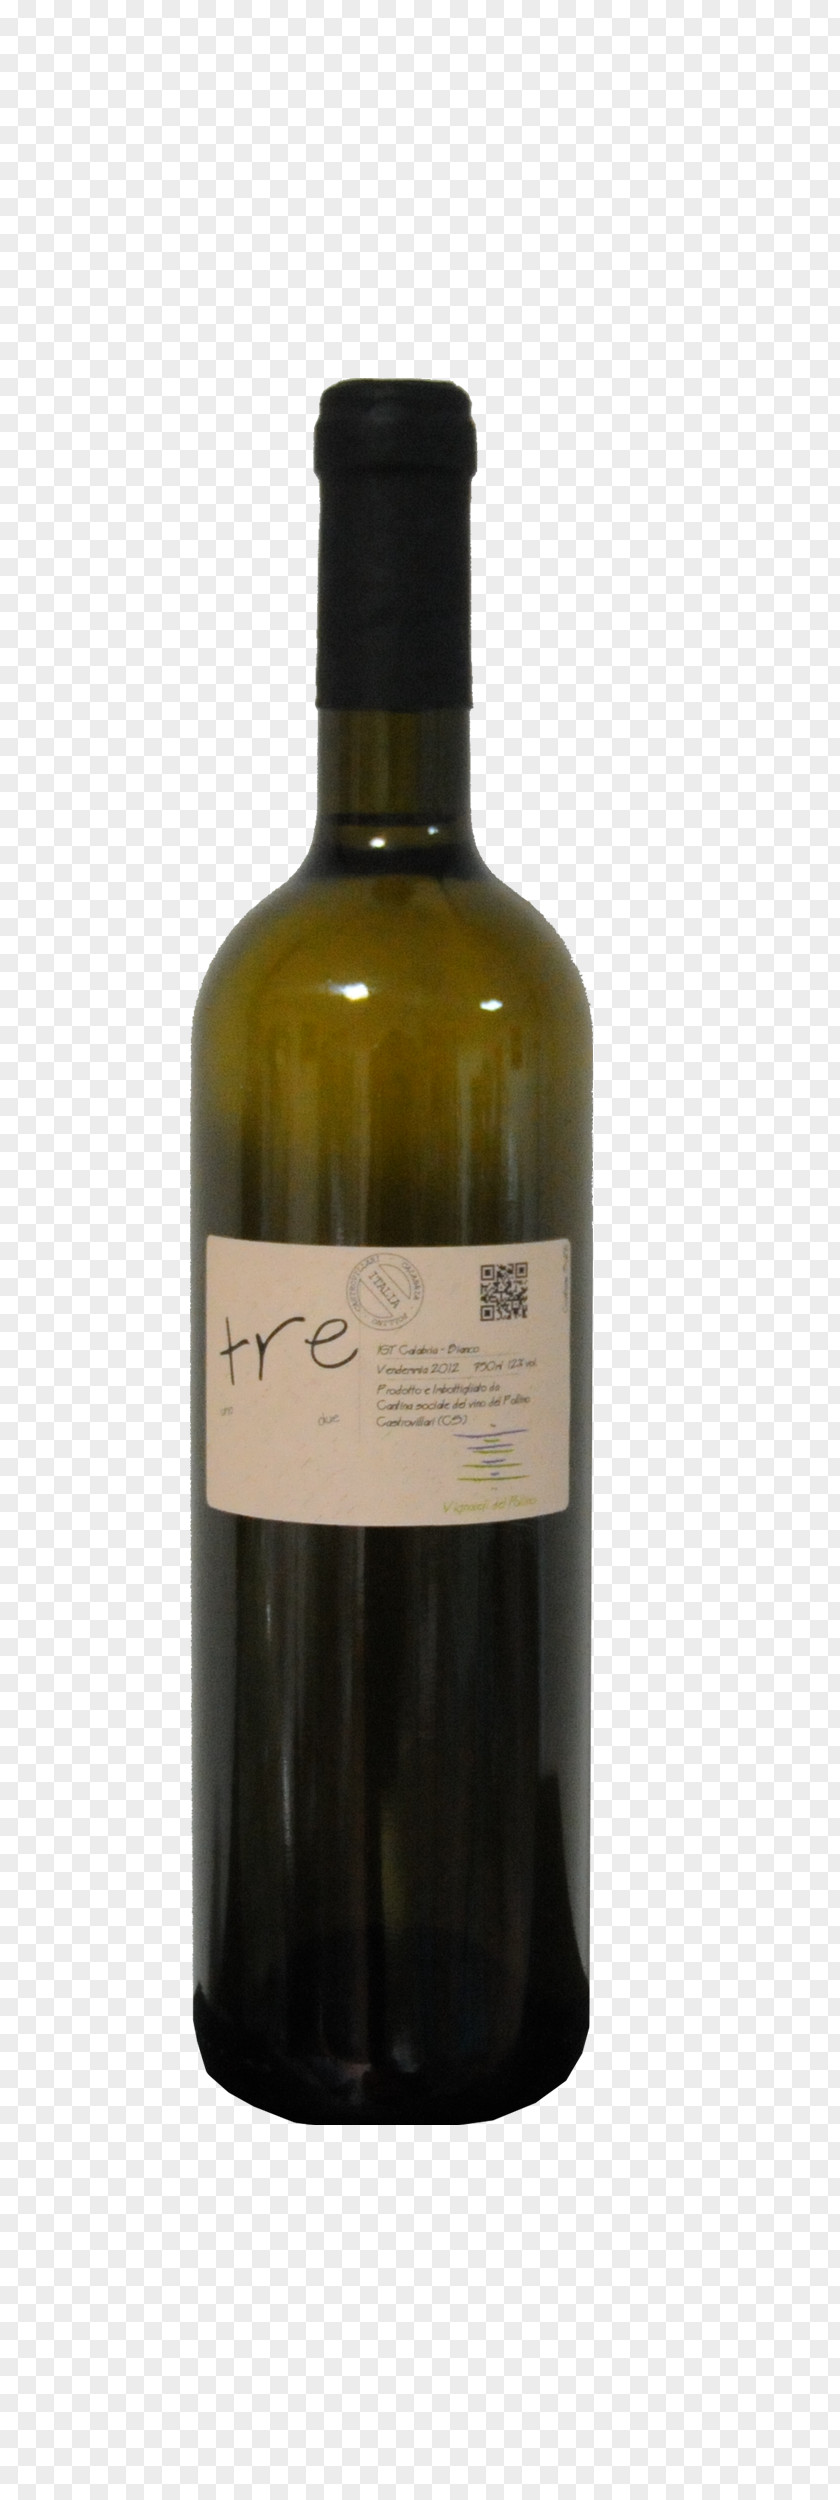 Wine White Calabrian Greco Cabernet Sauvignon PNG